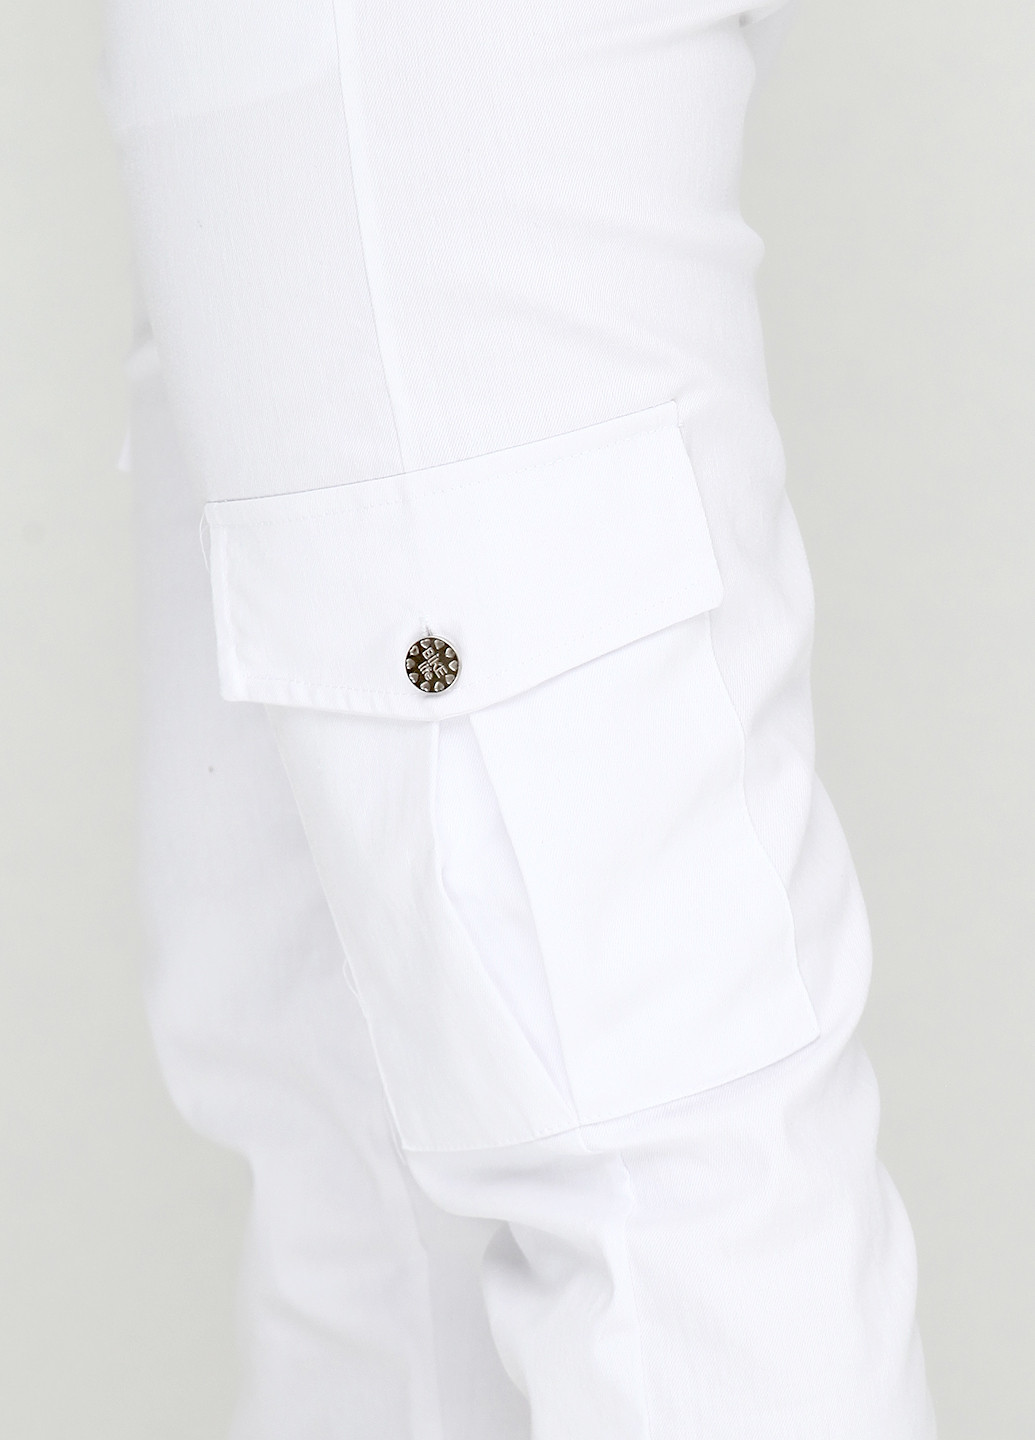 Белые кэжуал демисезонные джоггеры брюки Bikelife